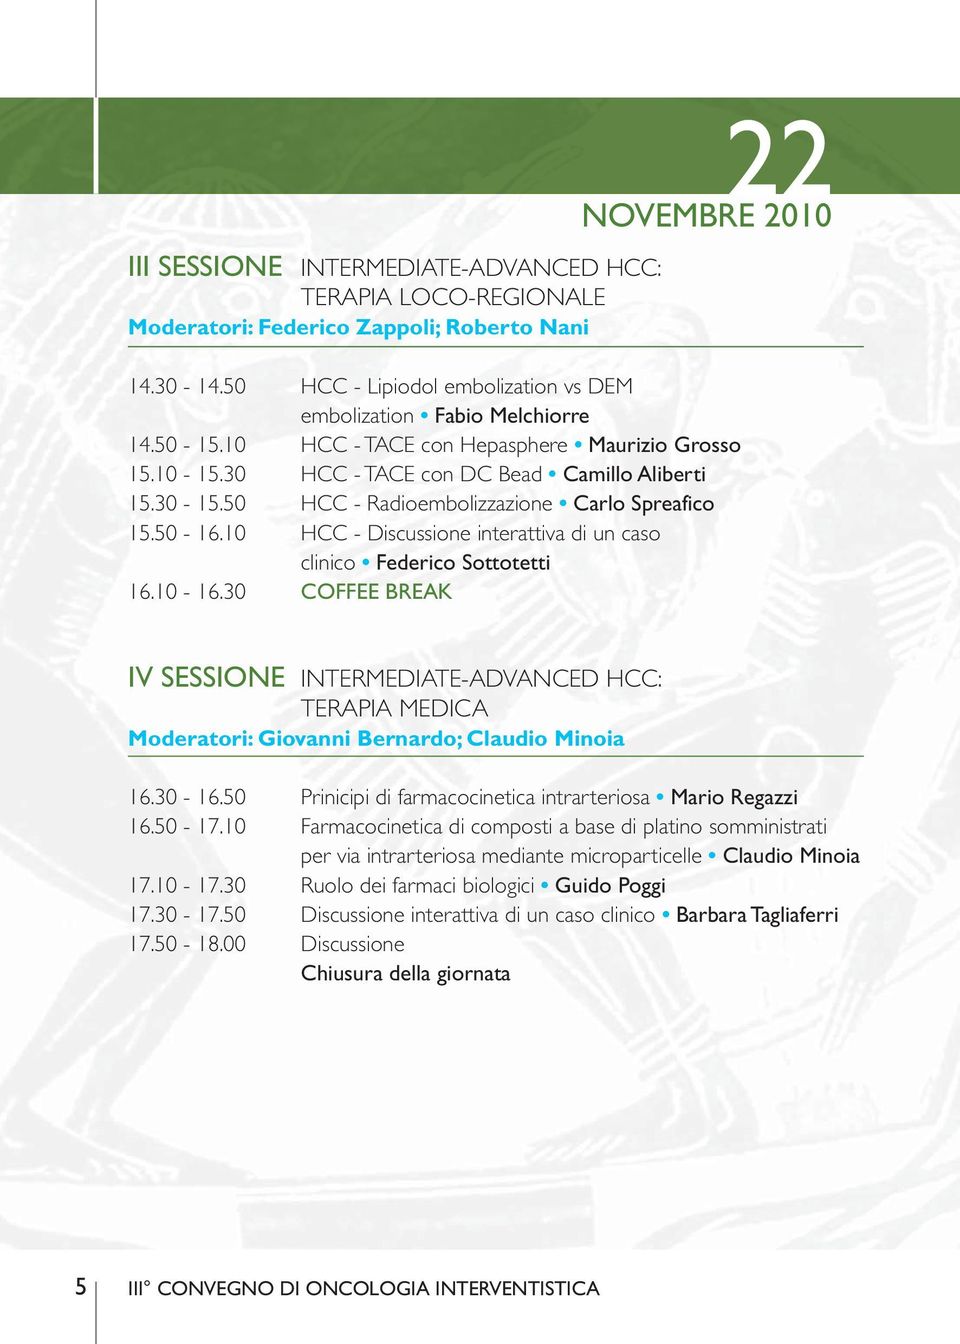 50 HCC - Radioembolizzazione Carlo Spreafico 15.50-16.10 HCC - Discussione interattiva di un caso clinico Federico Sottotetti 16.10-16.